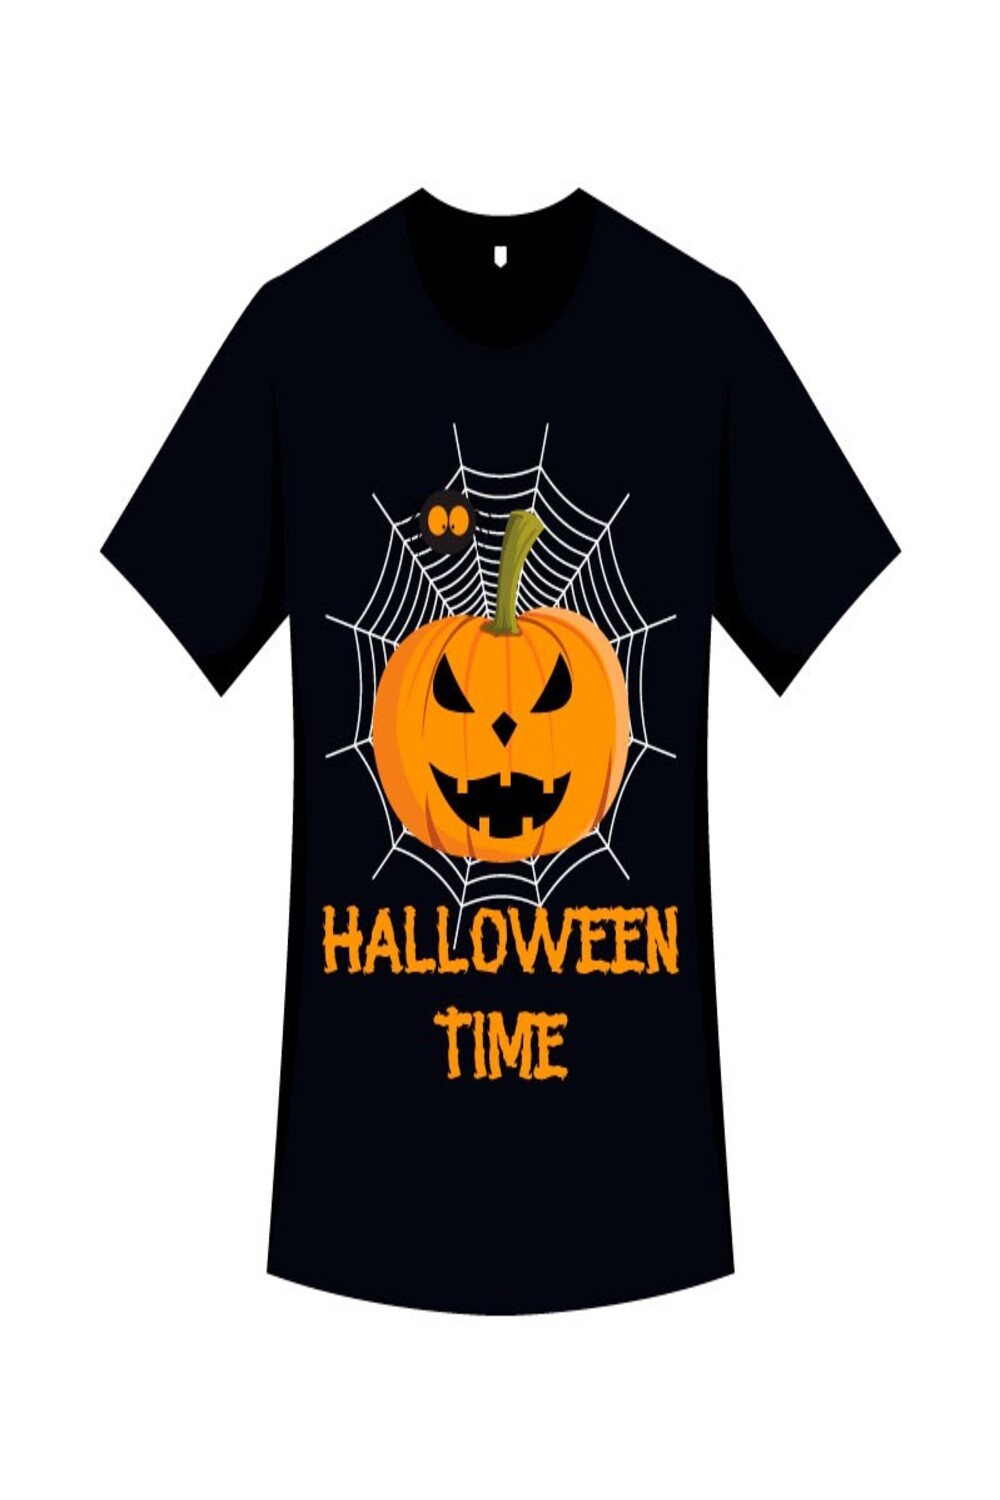 Halloween Shirt Design with Pumpkin pinterest image.